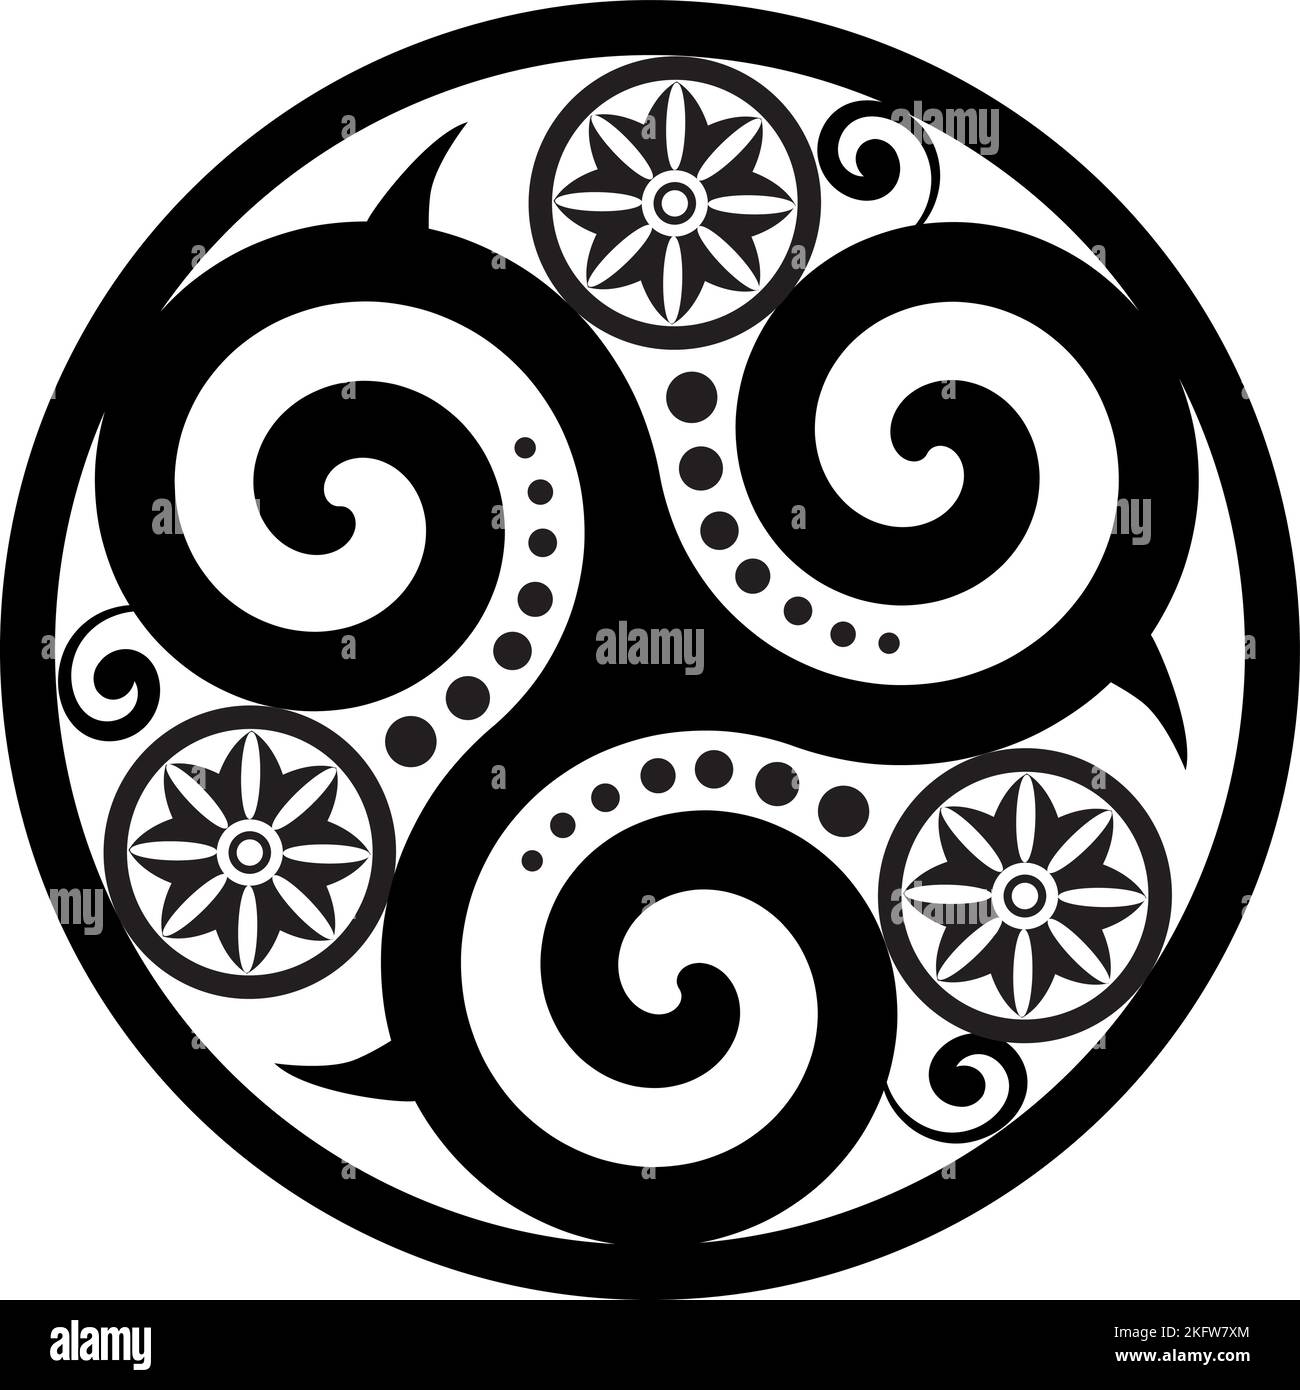 Symbole celtique - cercle de Knot et de Triskelion celtique - Trinité - géométrie sacrée - points d'énergie et roue de Dharma Illustration de Vecteur